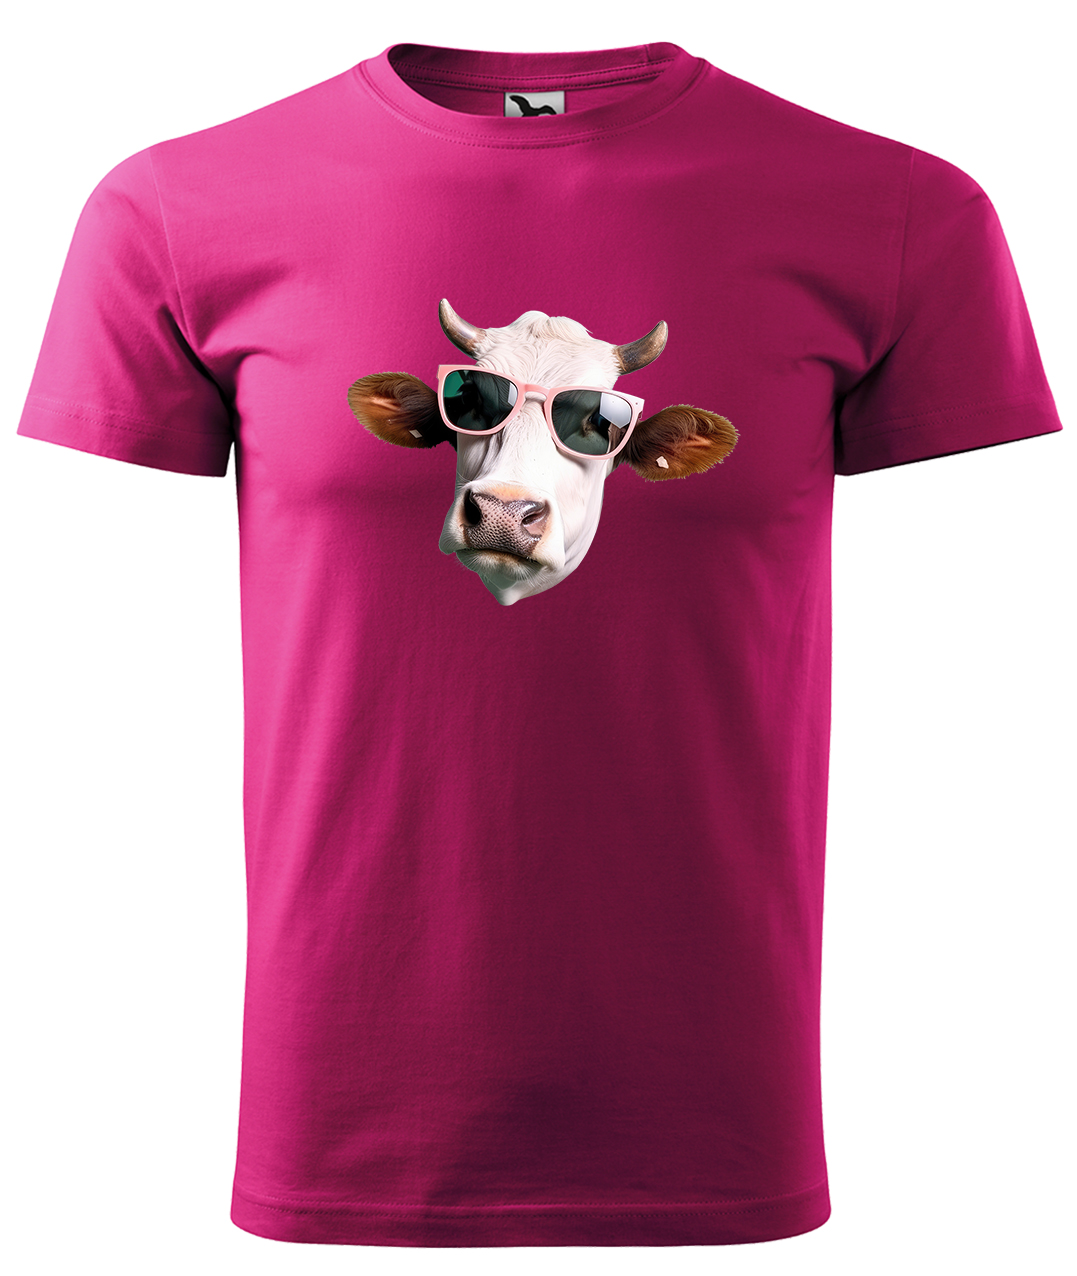 Dětské tričko s krávou - Kráva v brýlích Velikost: 4 roky / 110 cm, Barva: Malinová (63), Délka rukávu: Krátký rukáv